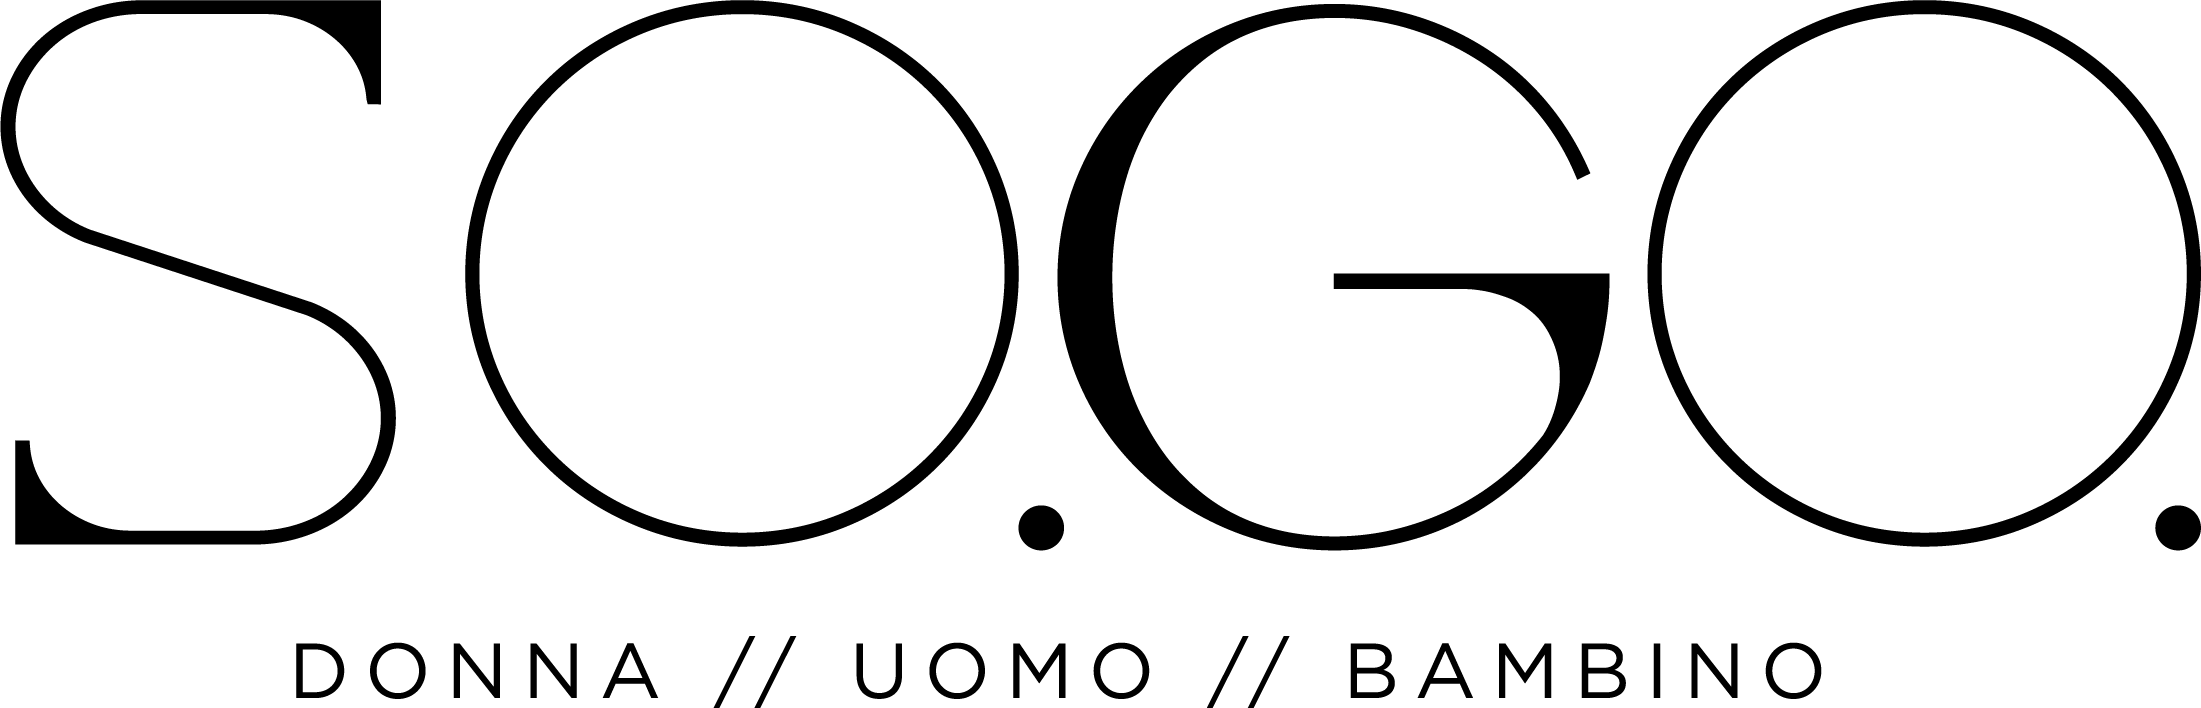 logo_letter3